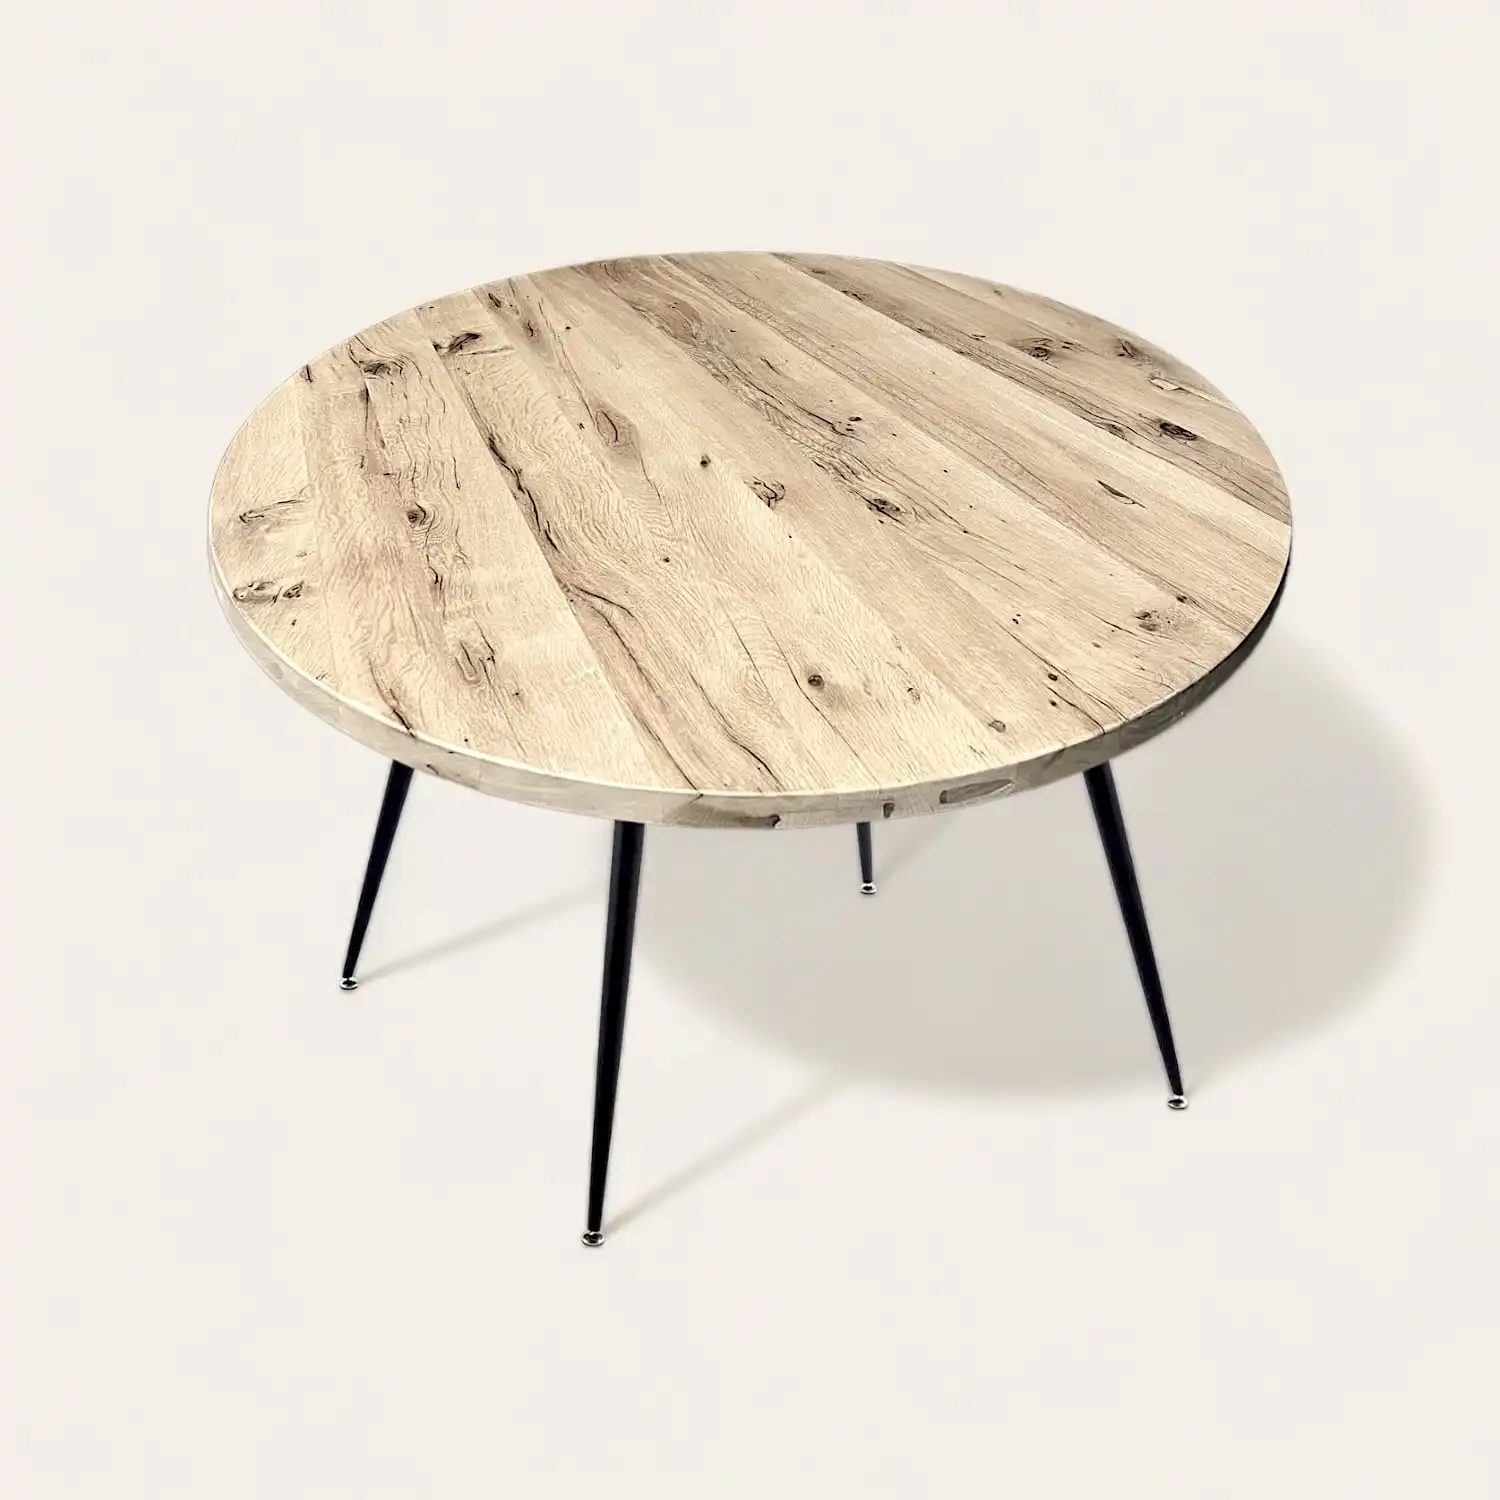  Une table ronde en bois rustique avec des pieds noirs sur fond blanc. 